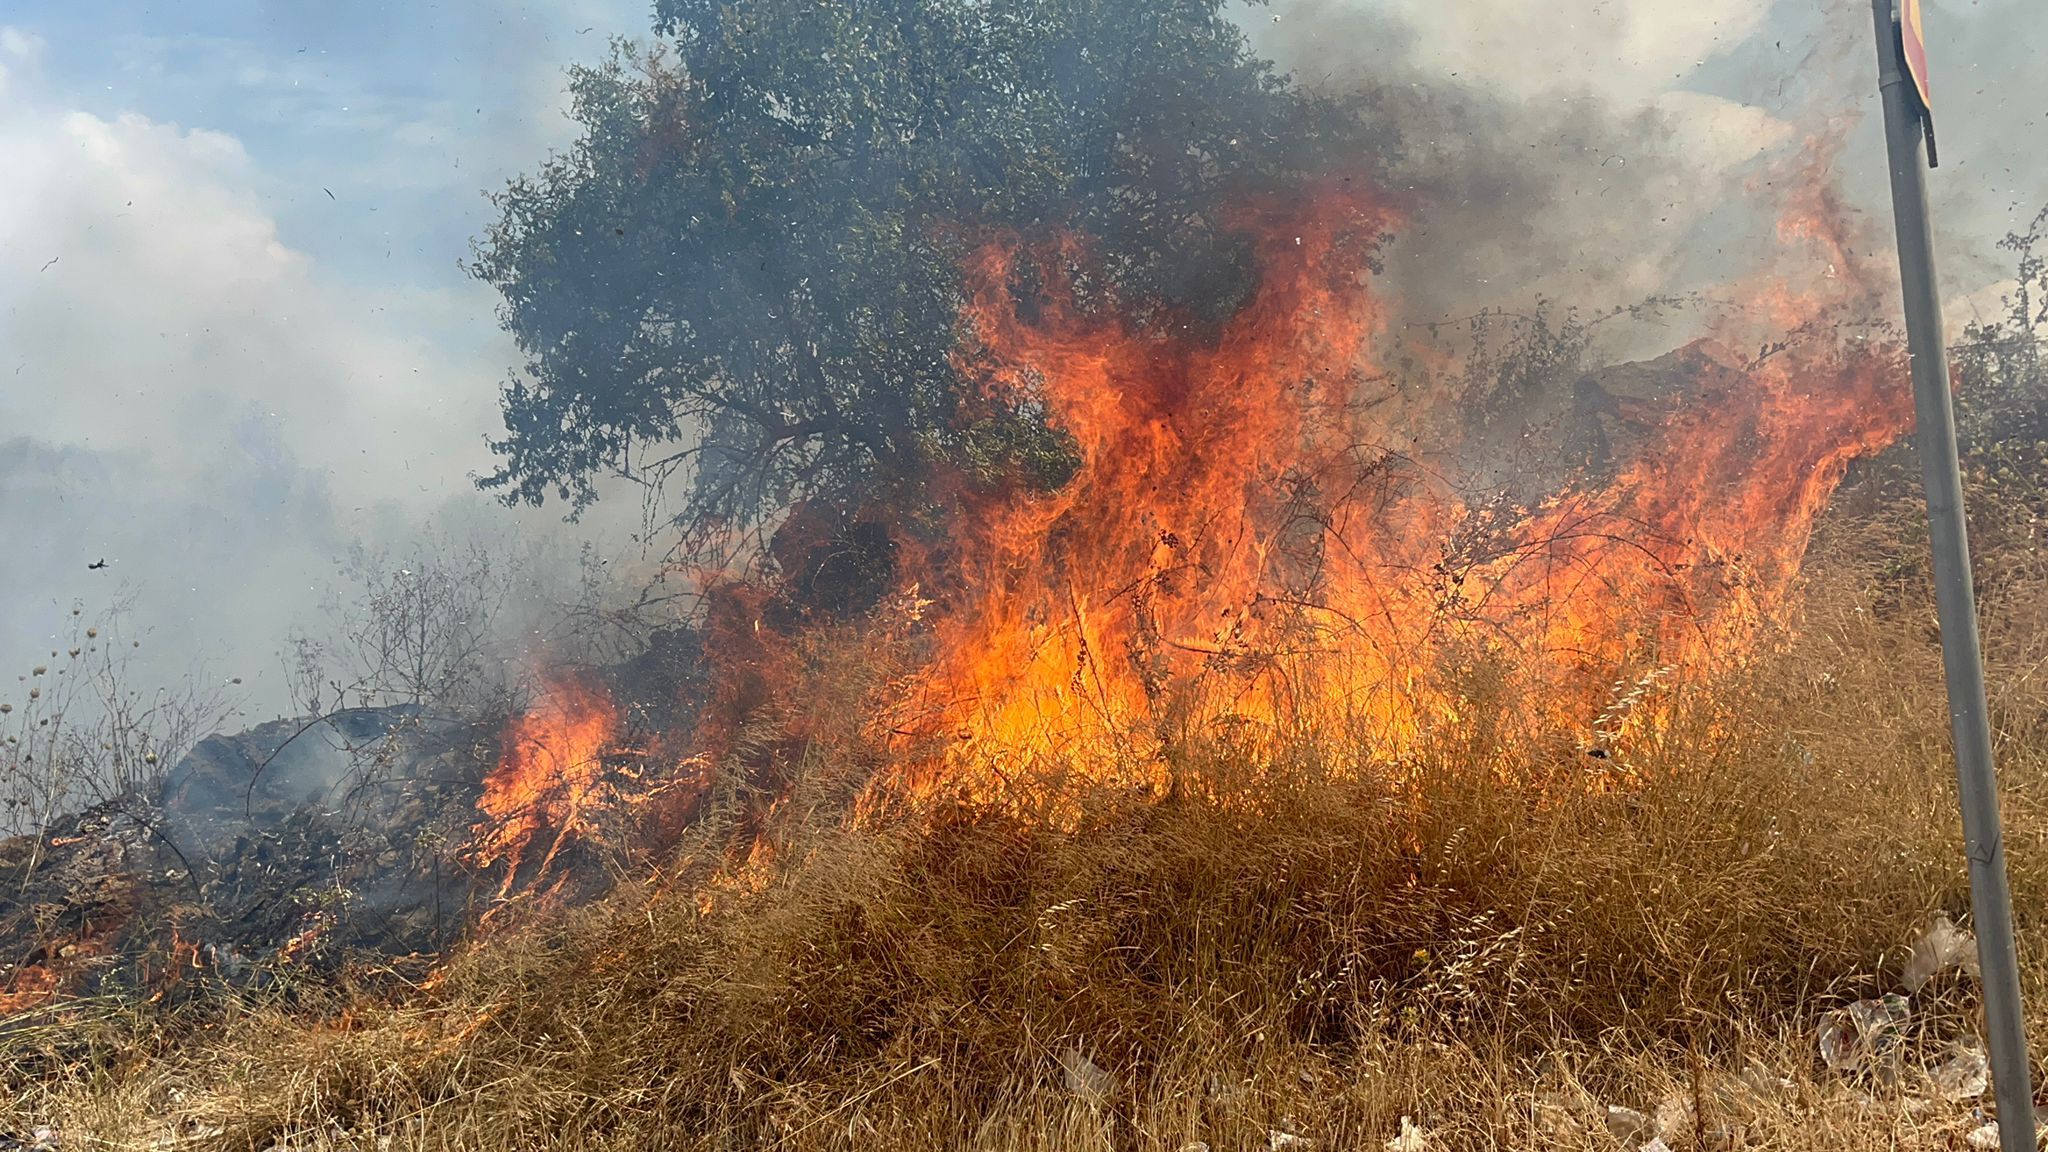 Incendio a Catania, ennesimo rogo in città: una zona di sterpaglie prende fuoco – FOTO E VIDEO